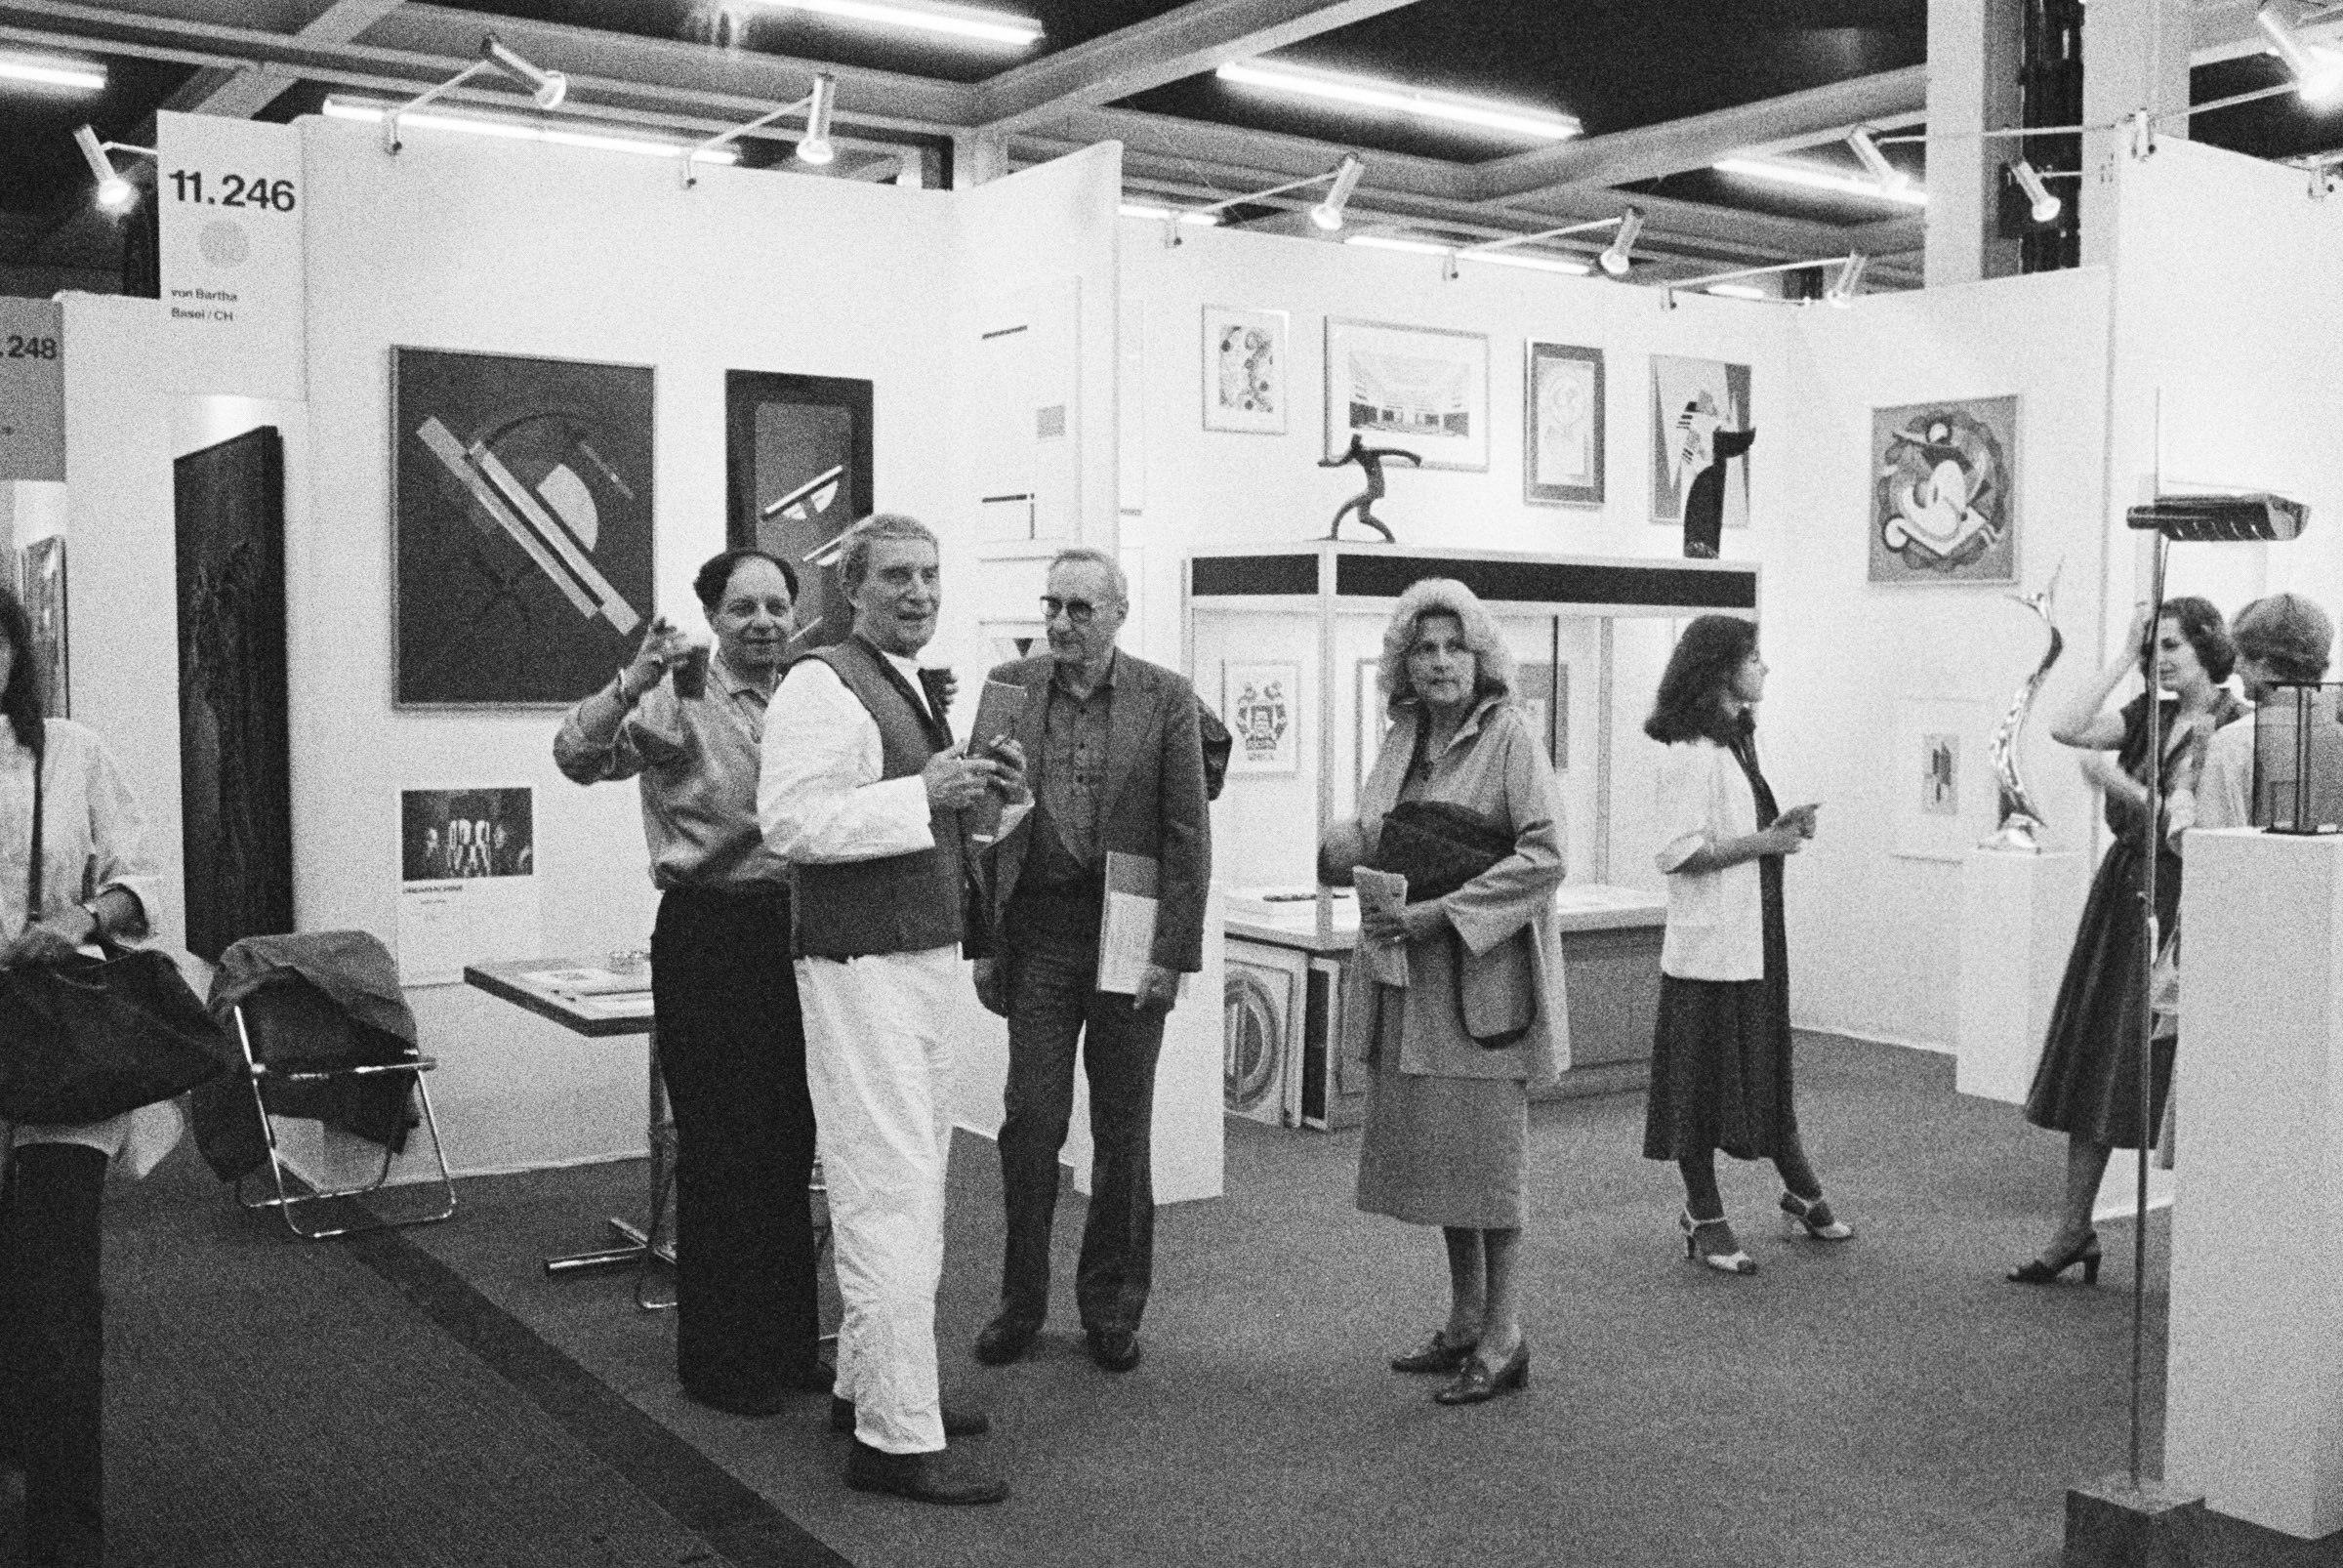 Art Basel since 1978